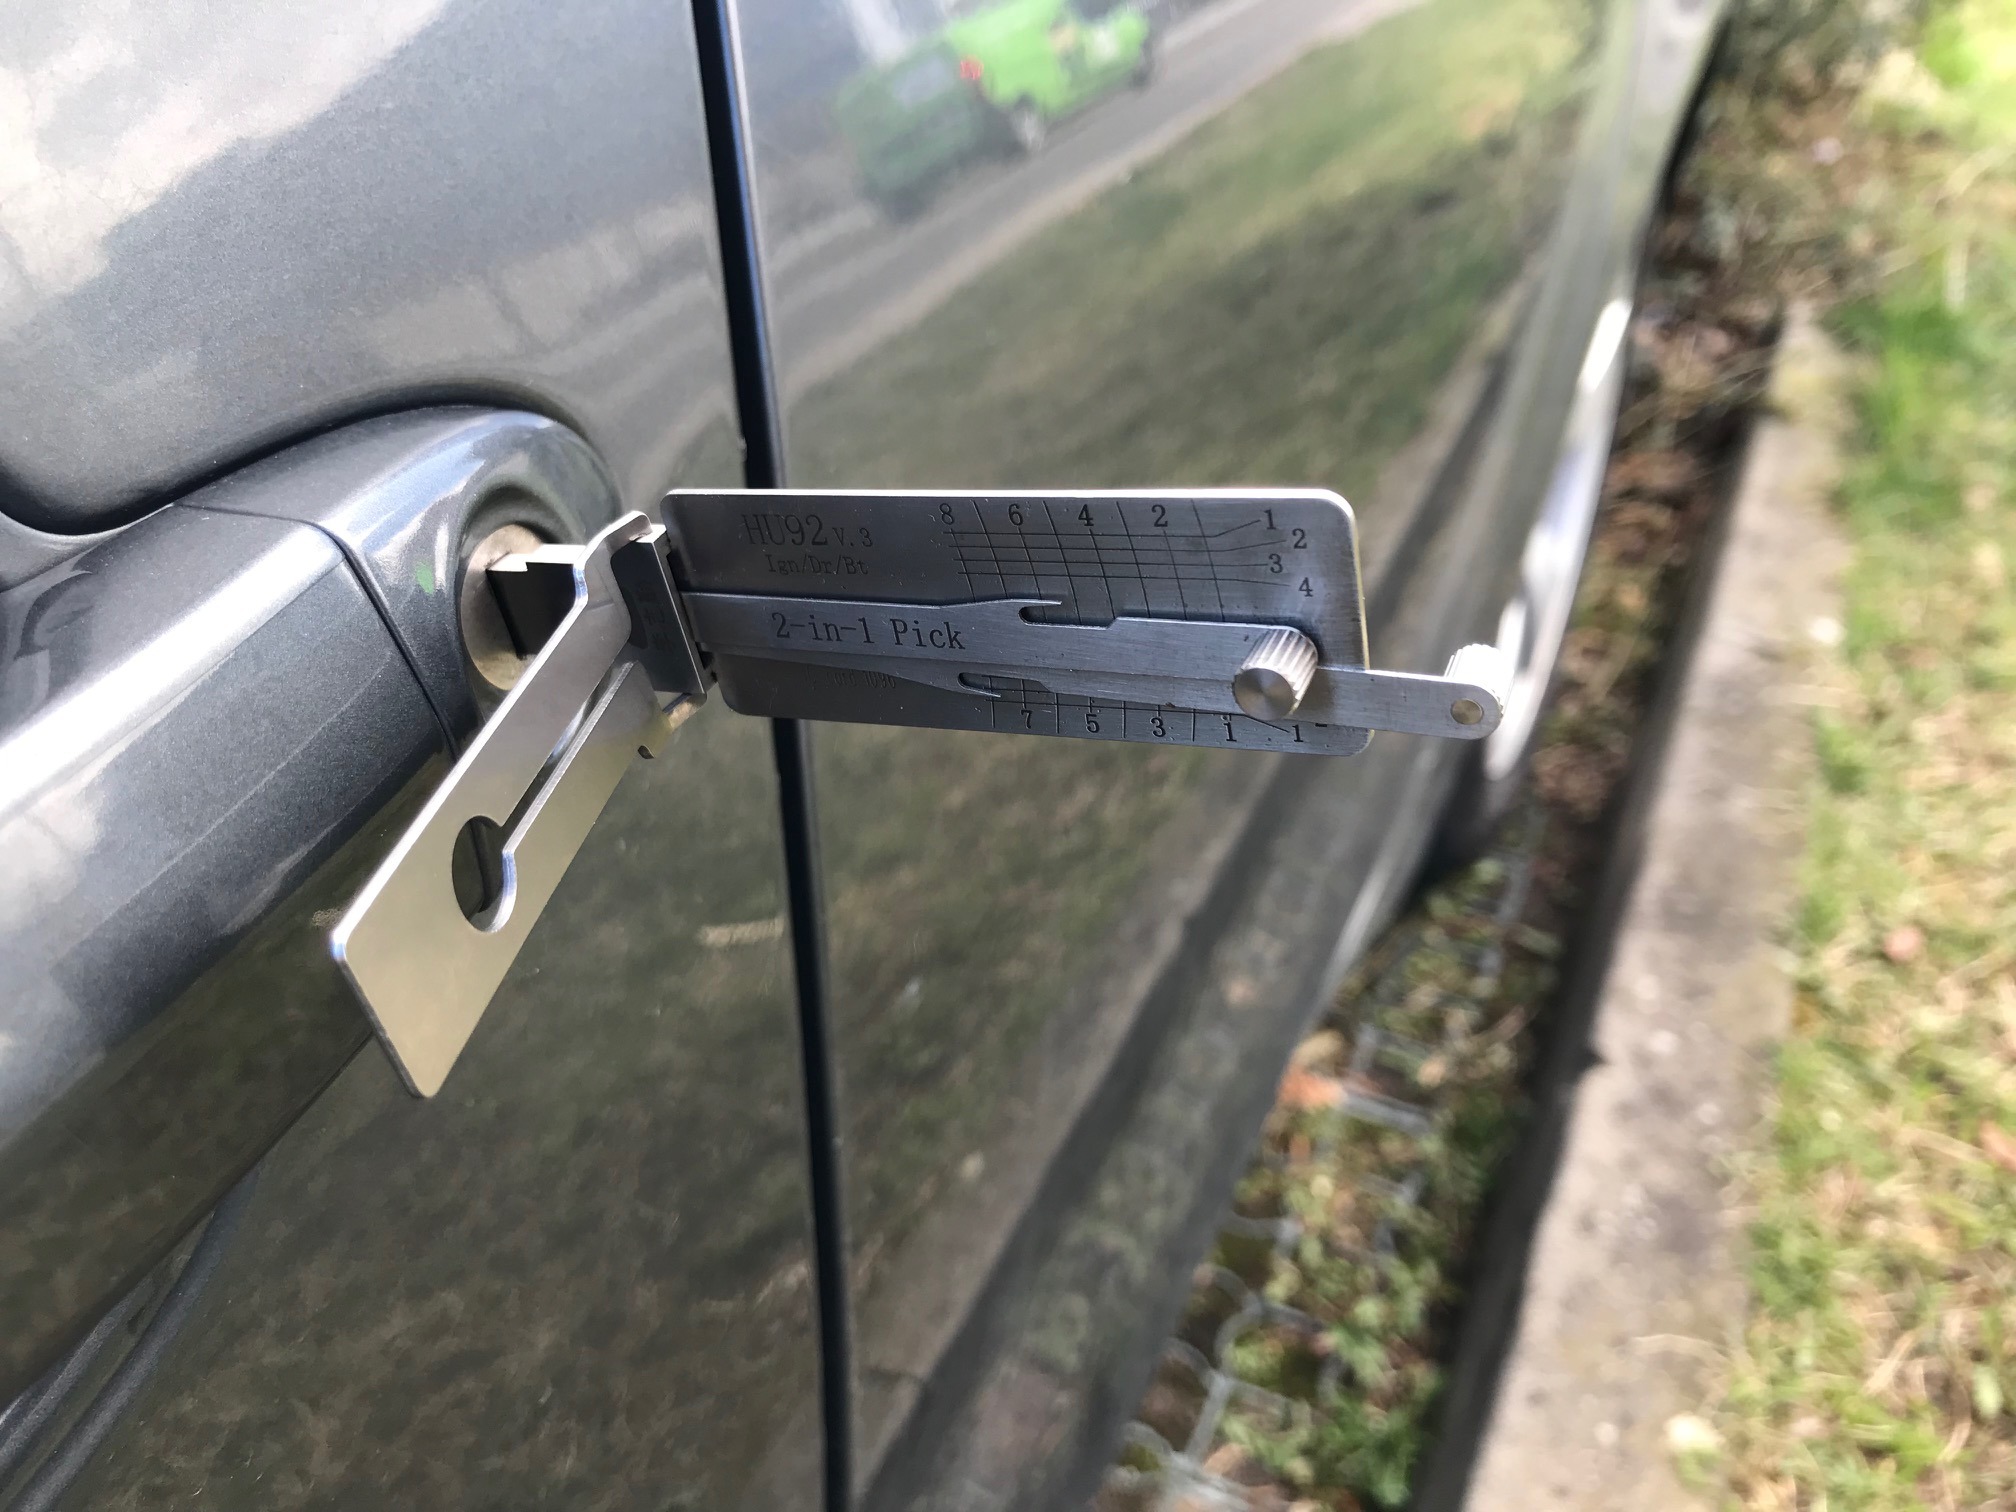 Otevření vozidla - ztráta klíčů